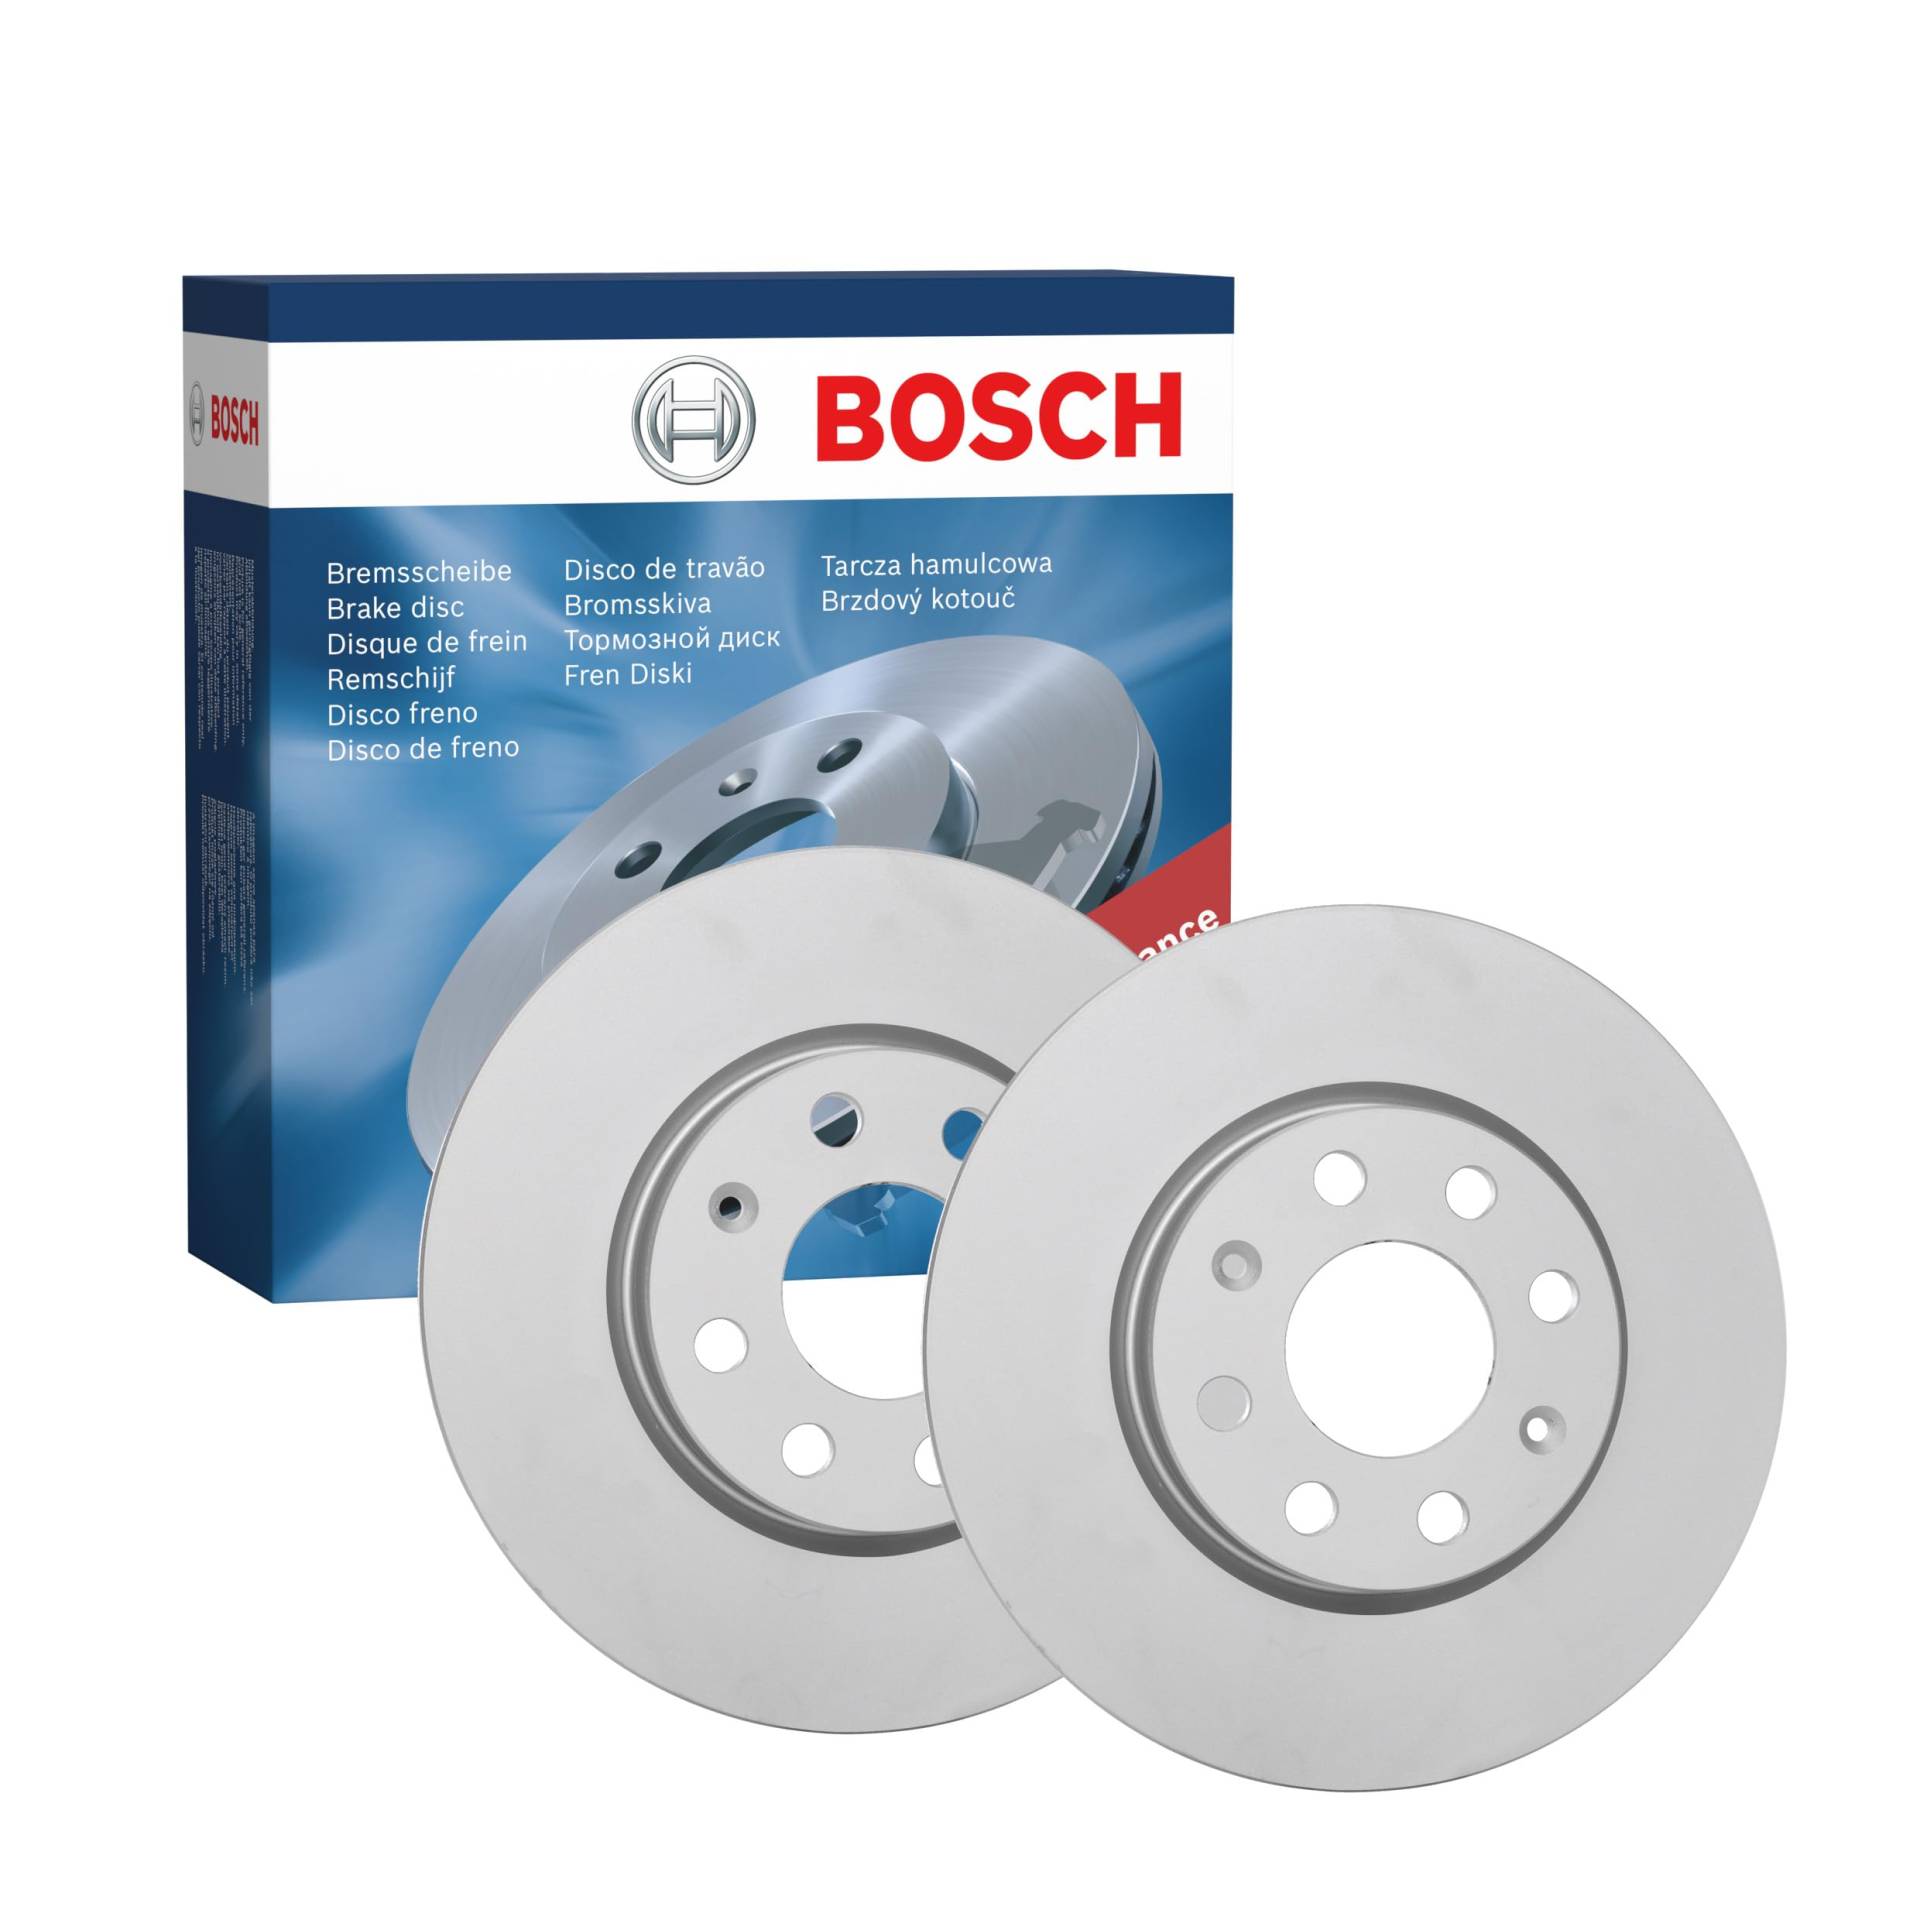 Bosch BD2090 Bremsscheiben - Vorderachse - ECE-R90 Zertifizierung - zwei Bremsscheiben pro Set von Bosch Automotive